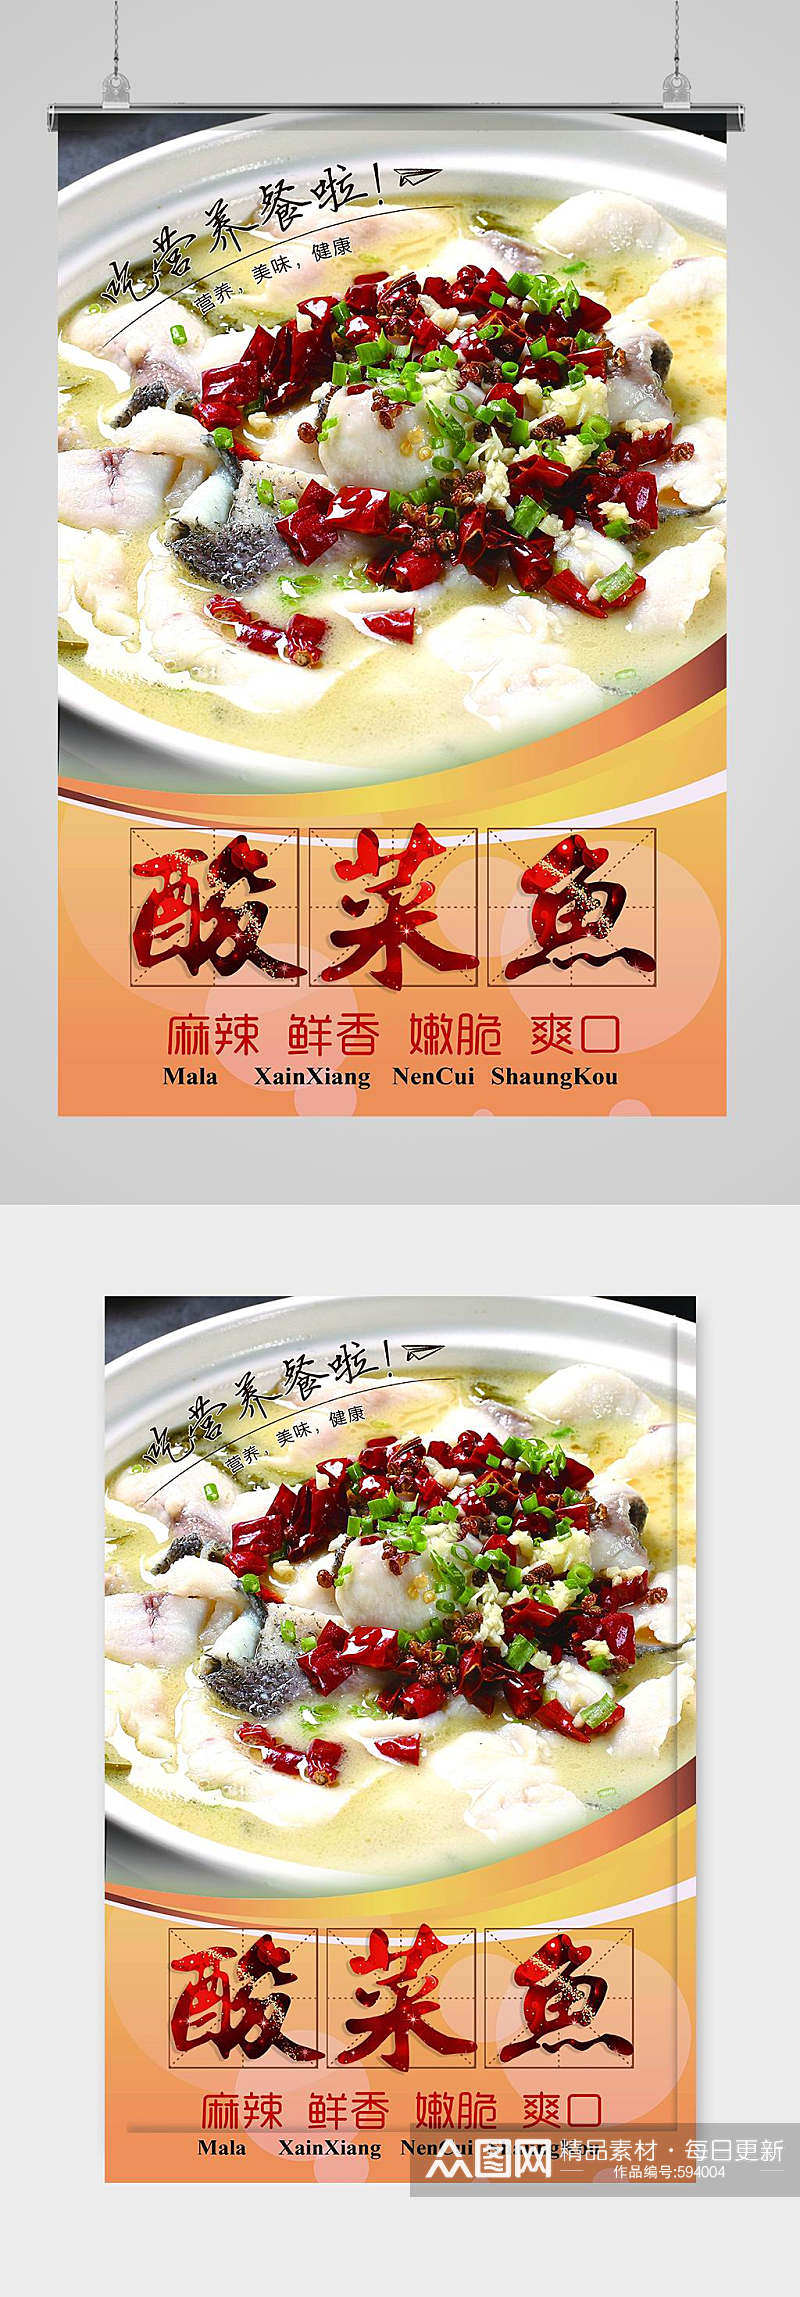 川菜美食酸菜鱼宣传海报素材